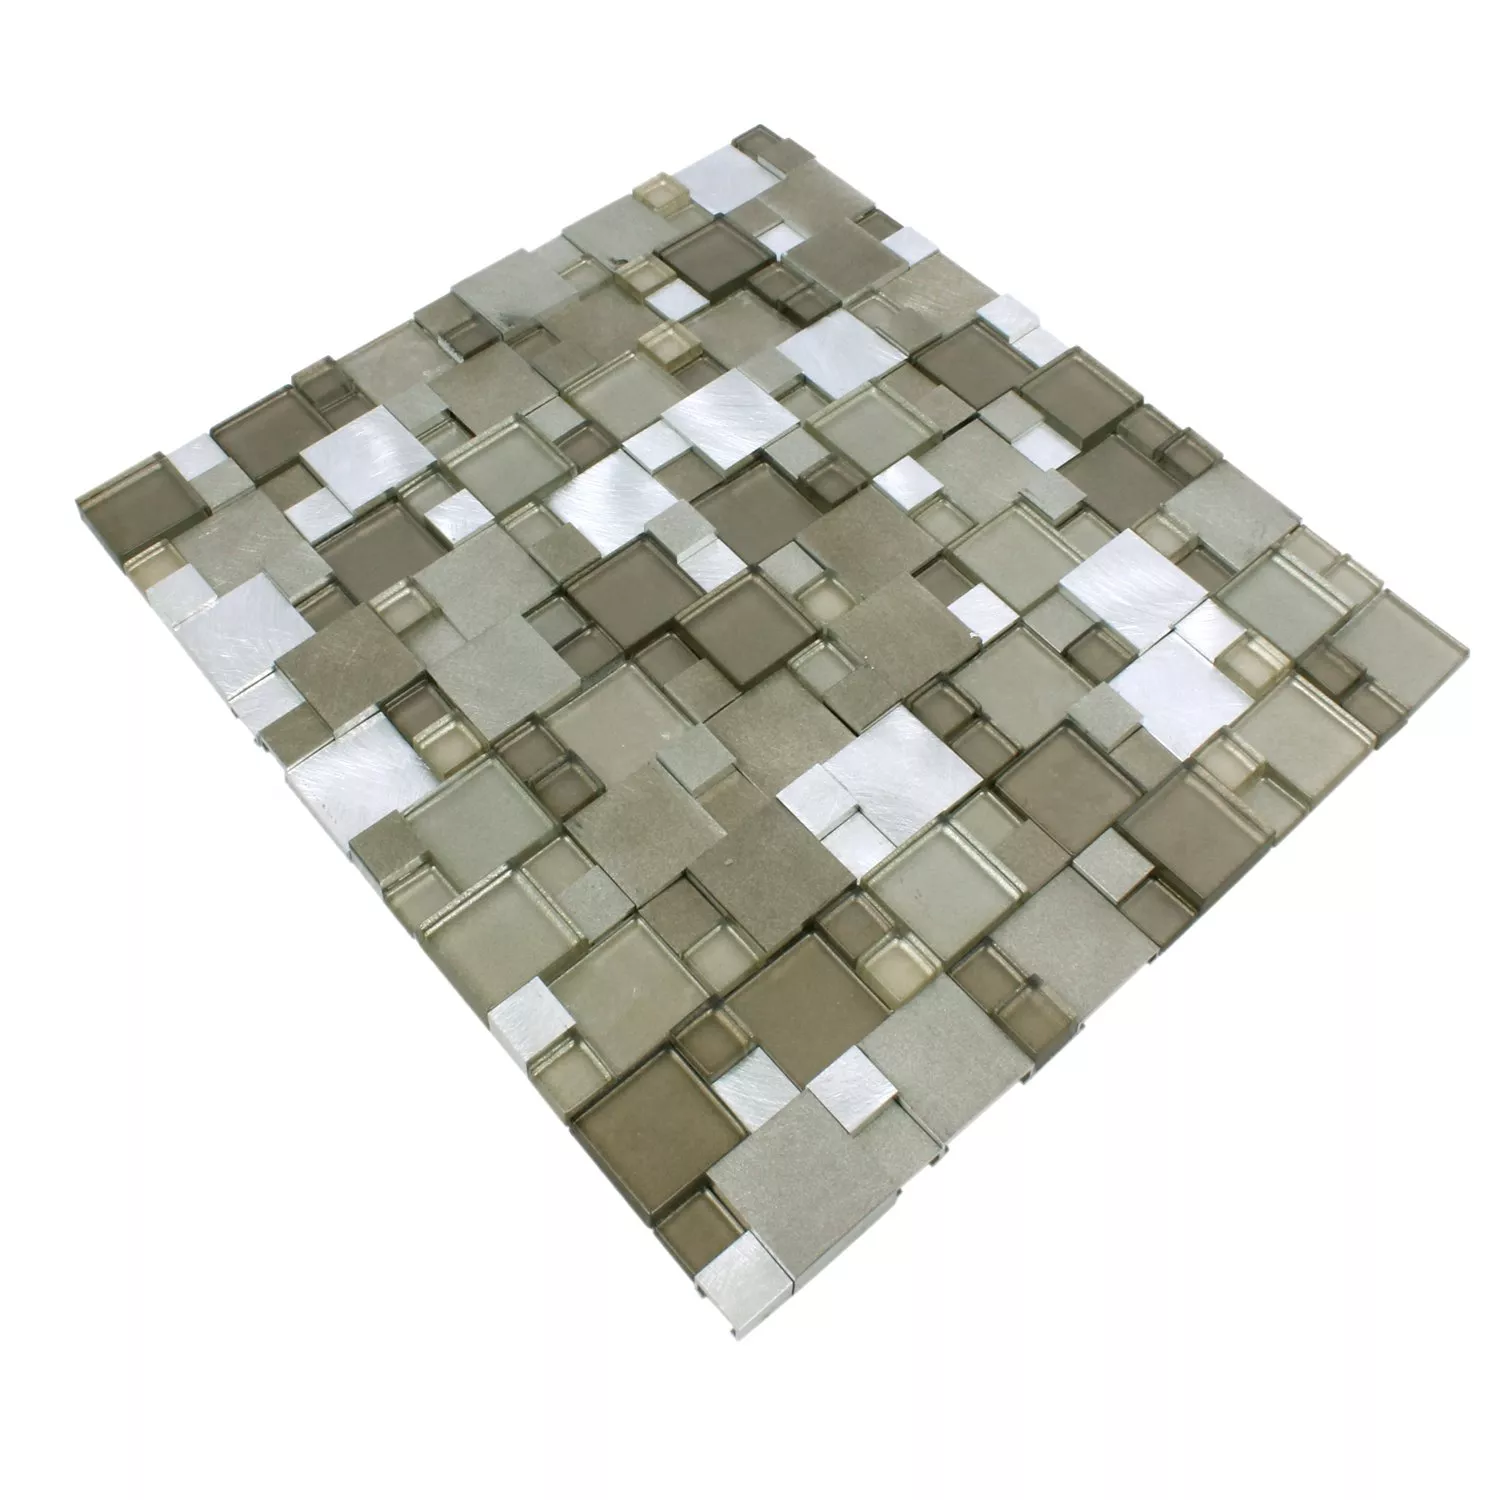 Sample Mosaic Tiles Glass Aluminum Condor 3D Brown Mix